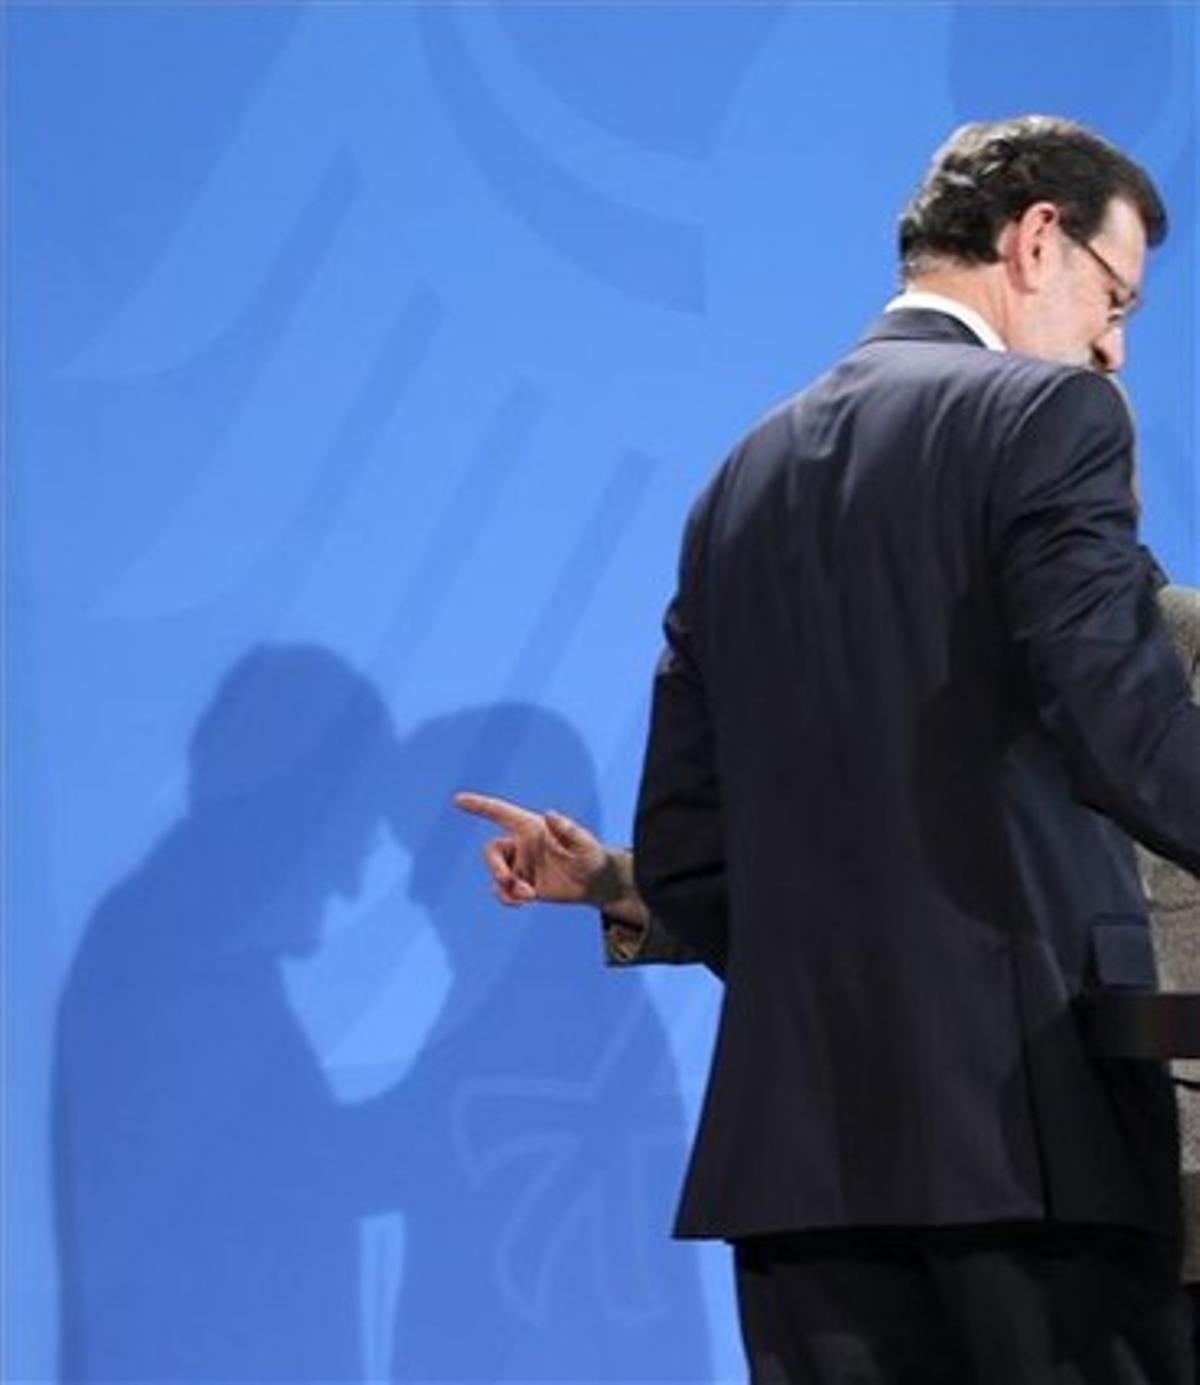 Les ombres de Rajoy i Merkel, durant la seva roda de premsa de dilluns, a Berlín.